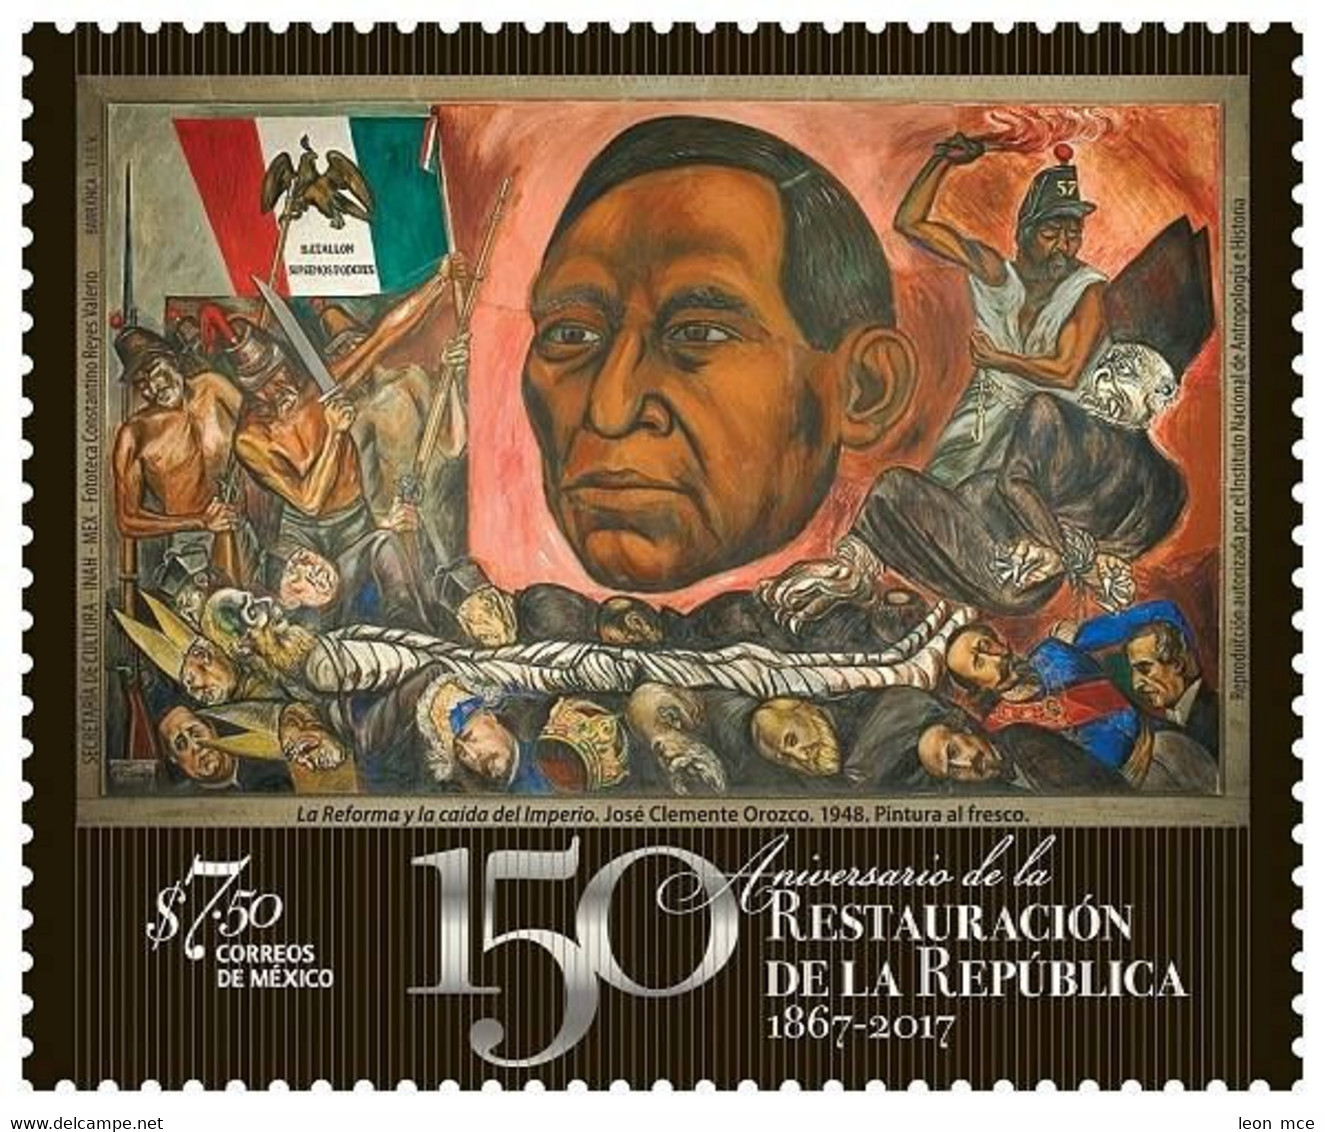 2017 MÉXICO 150 Aniversario De La Restauración De La República, MNH BENITO JUAREZ, RESTORATION OF THE REPUBLIC, MURAL - Mexico